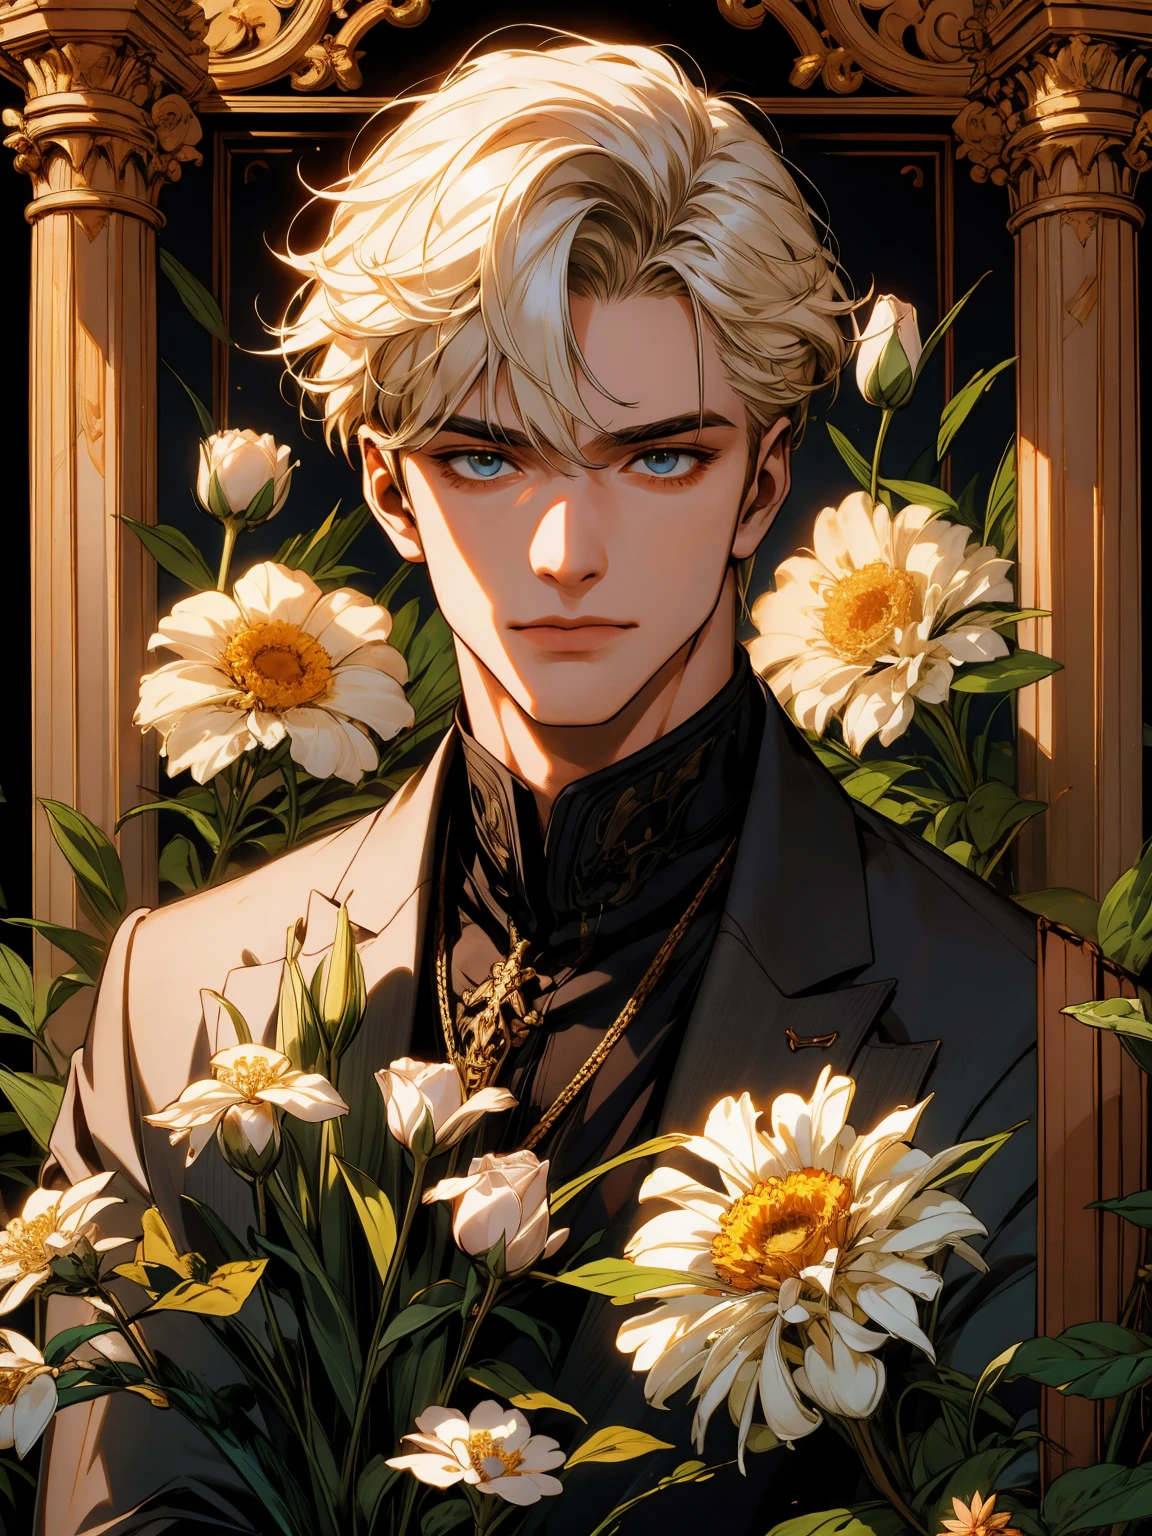 걸작, 꽃을 들고 있는 남자의 콜라주, 금발, 흑발, 흰머리